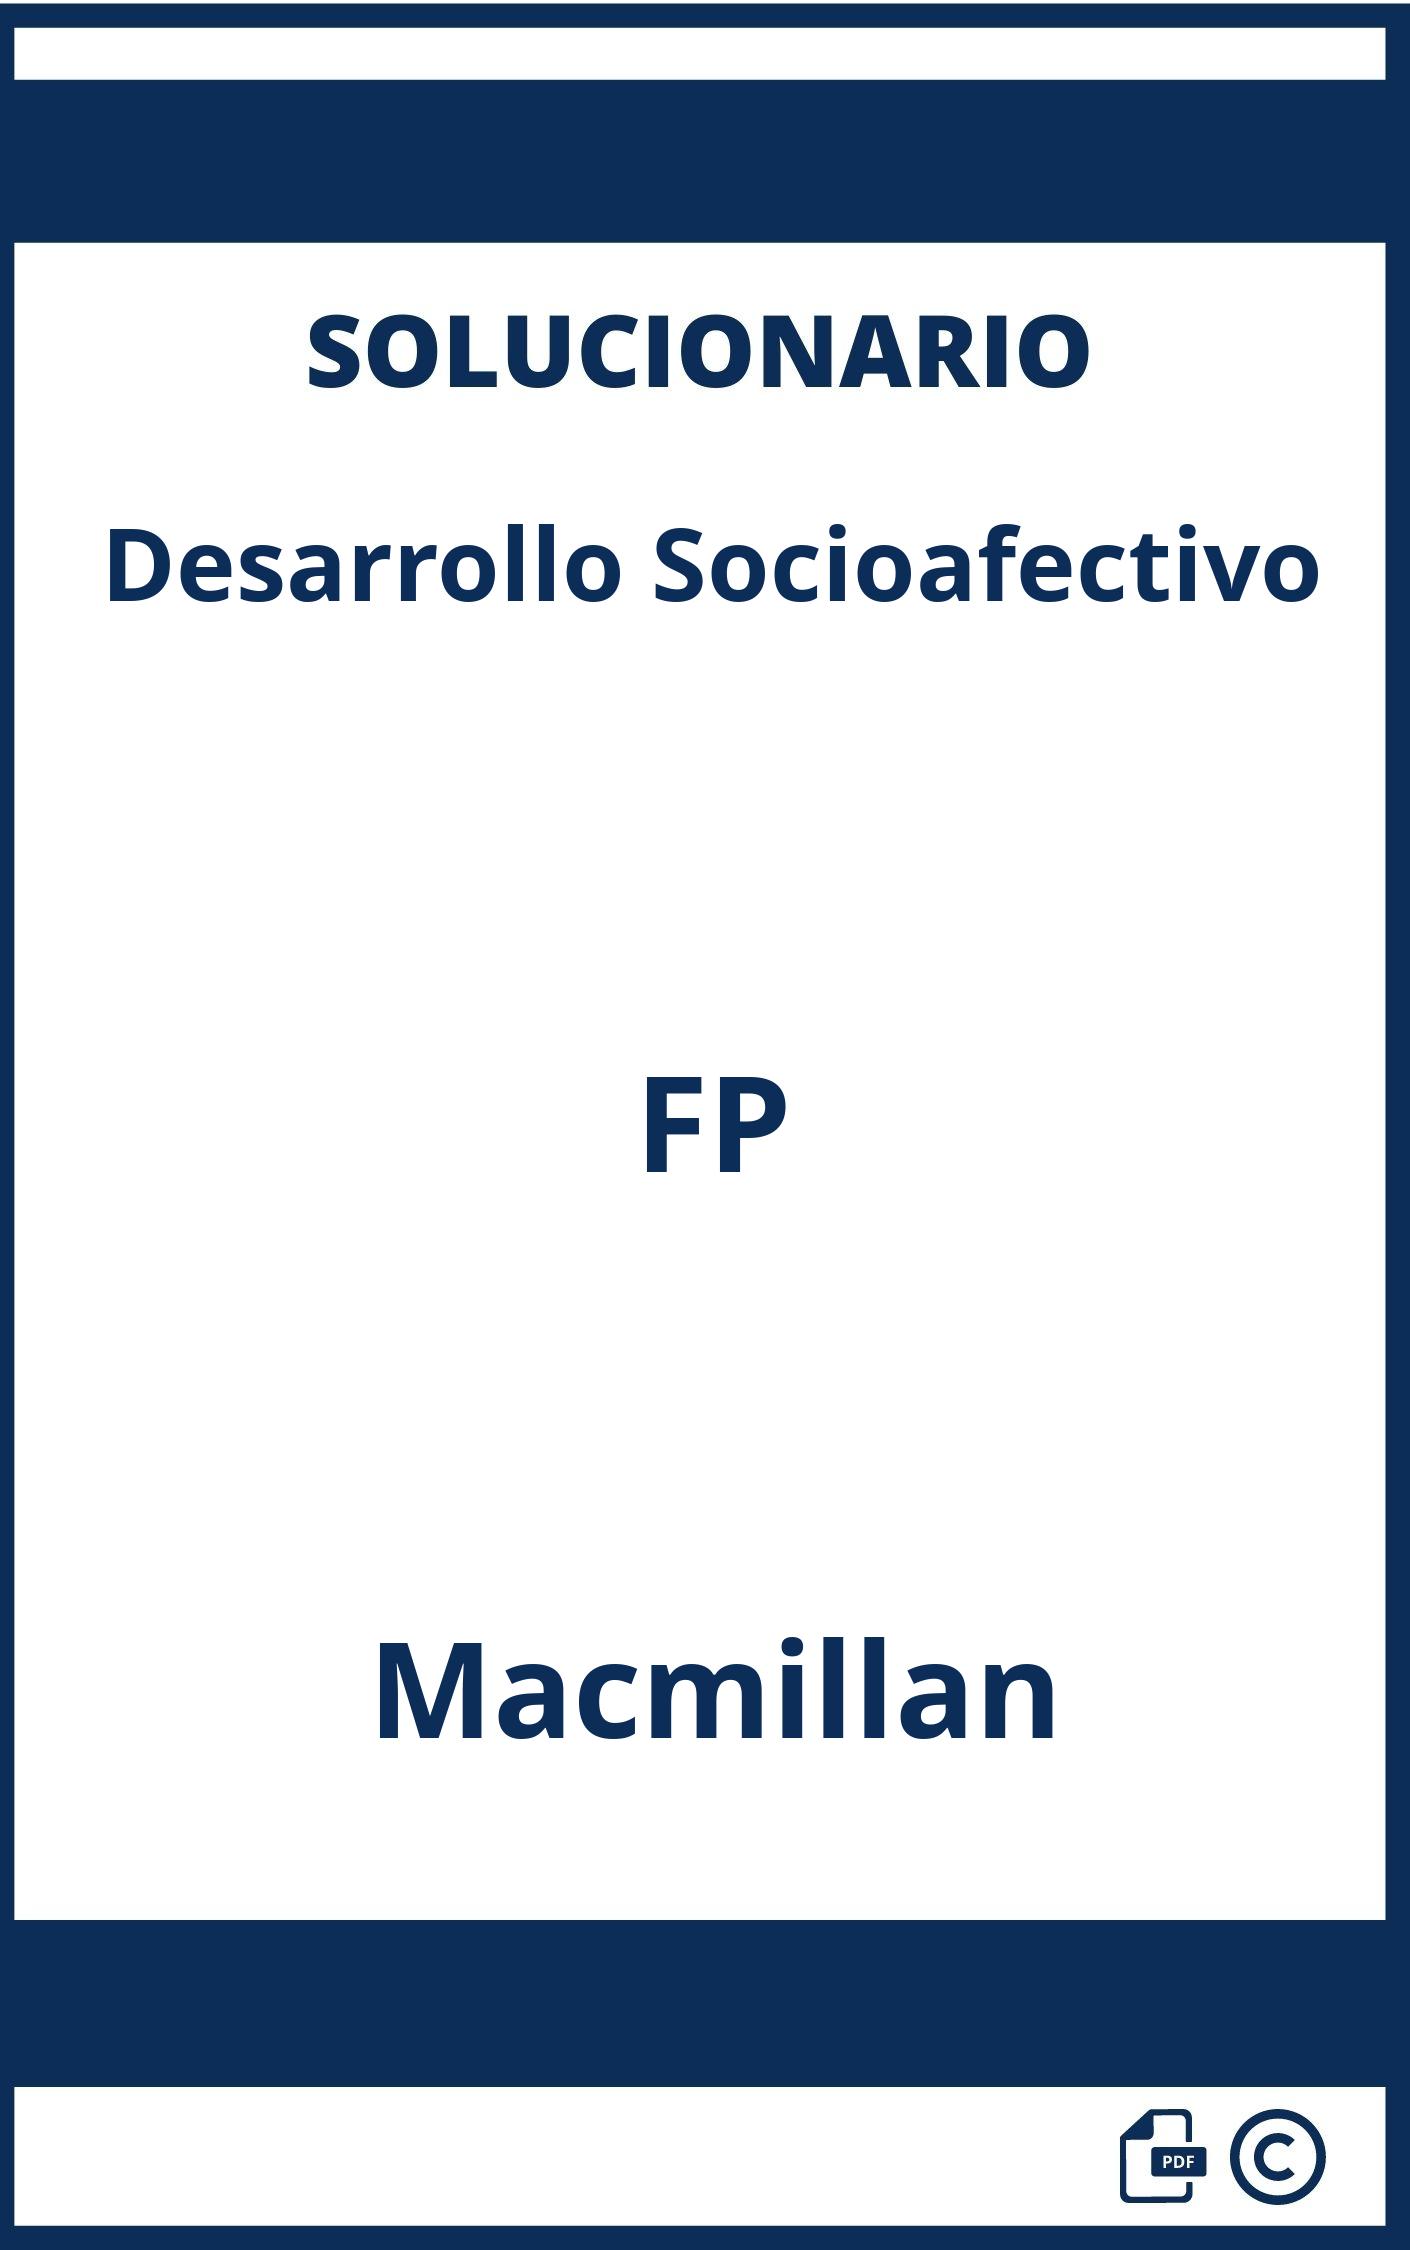 Solucionario Desarrollo Socioafectivo FP Macmillan